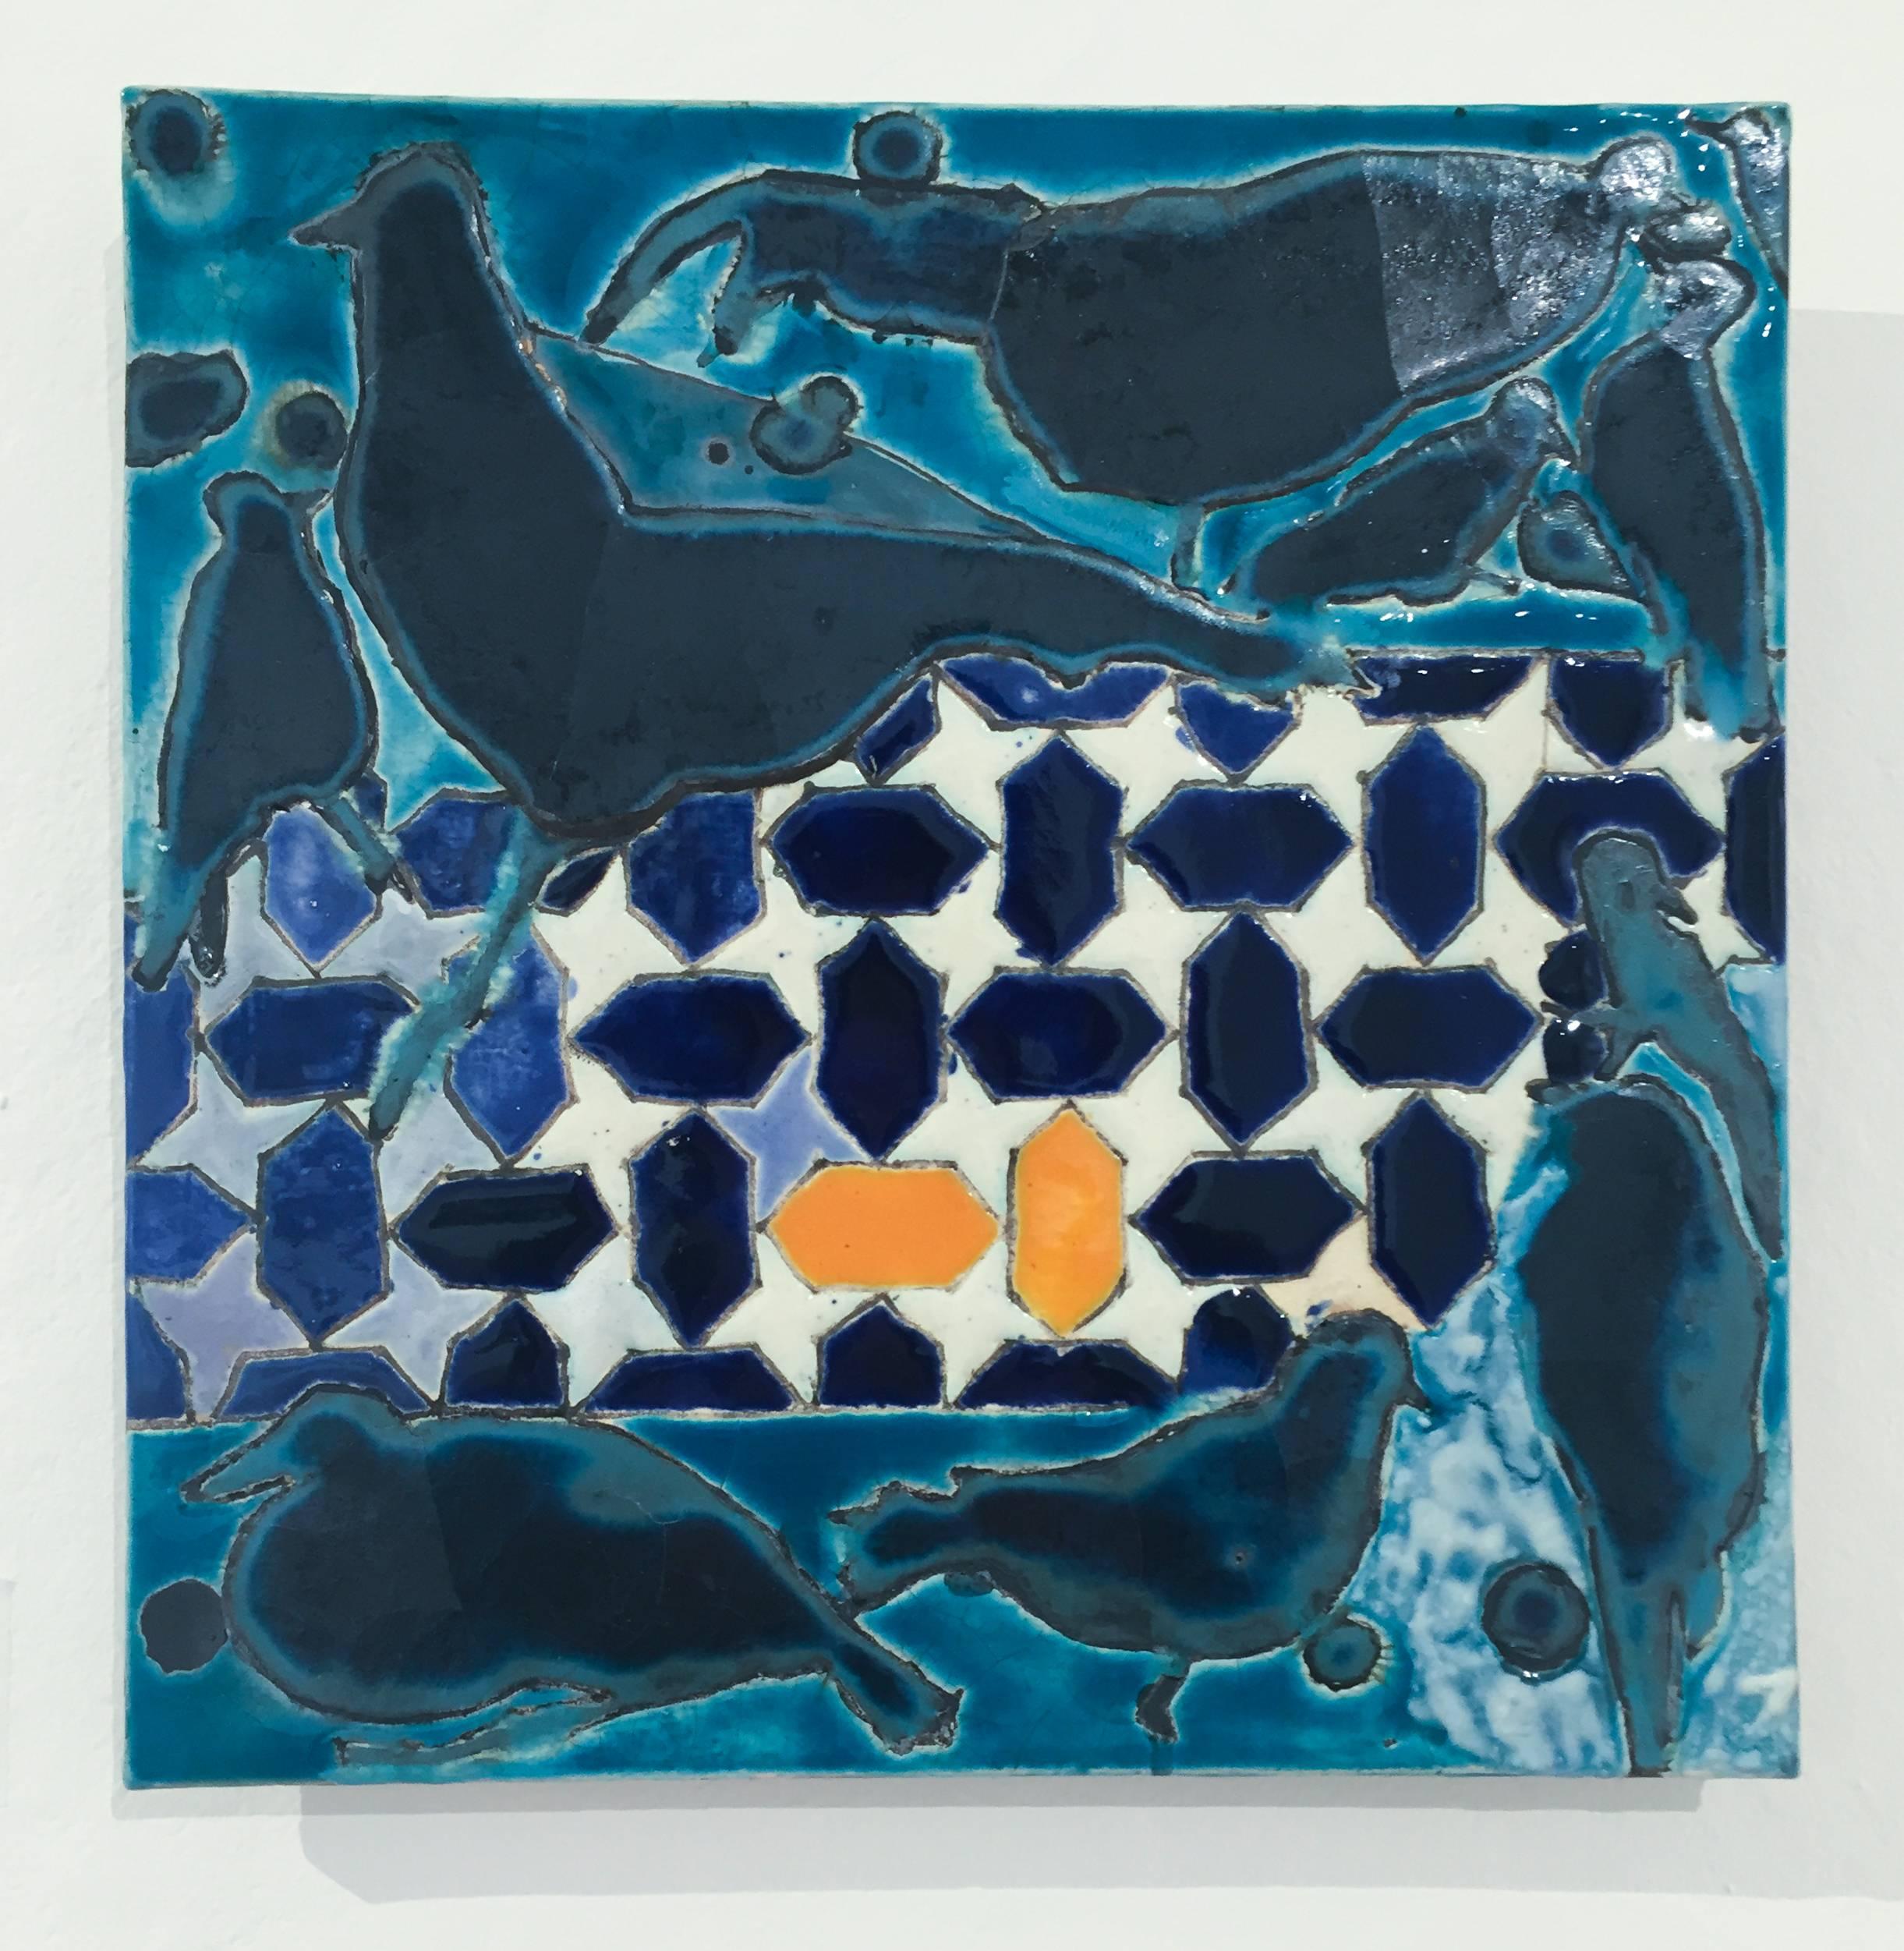 Abstrakte Keramik-Wandskulptur auf einer Platte mit schwarzen Vögeln und blauen und blaugrünen Mosaikfliesen
13 x 13 Zoll
Steingut, keramische Glasuren auf Platte

Diese zeitgenössische hängende Keramikfliese wurde von der Künstlerin Anne Francey